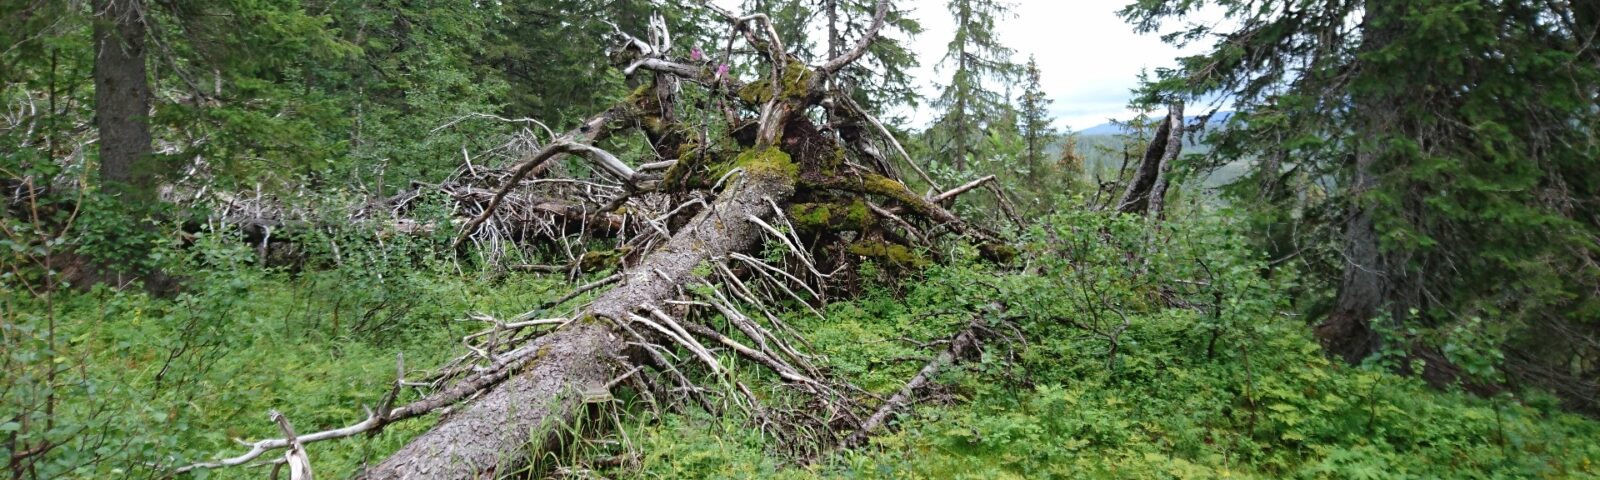 Bilde av et tre som har falt i på grønn skogbunn, med høye grantrær rundt.